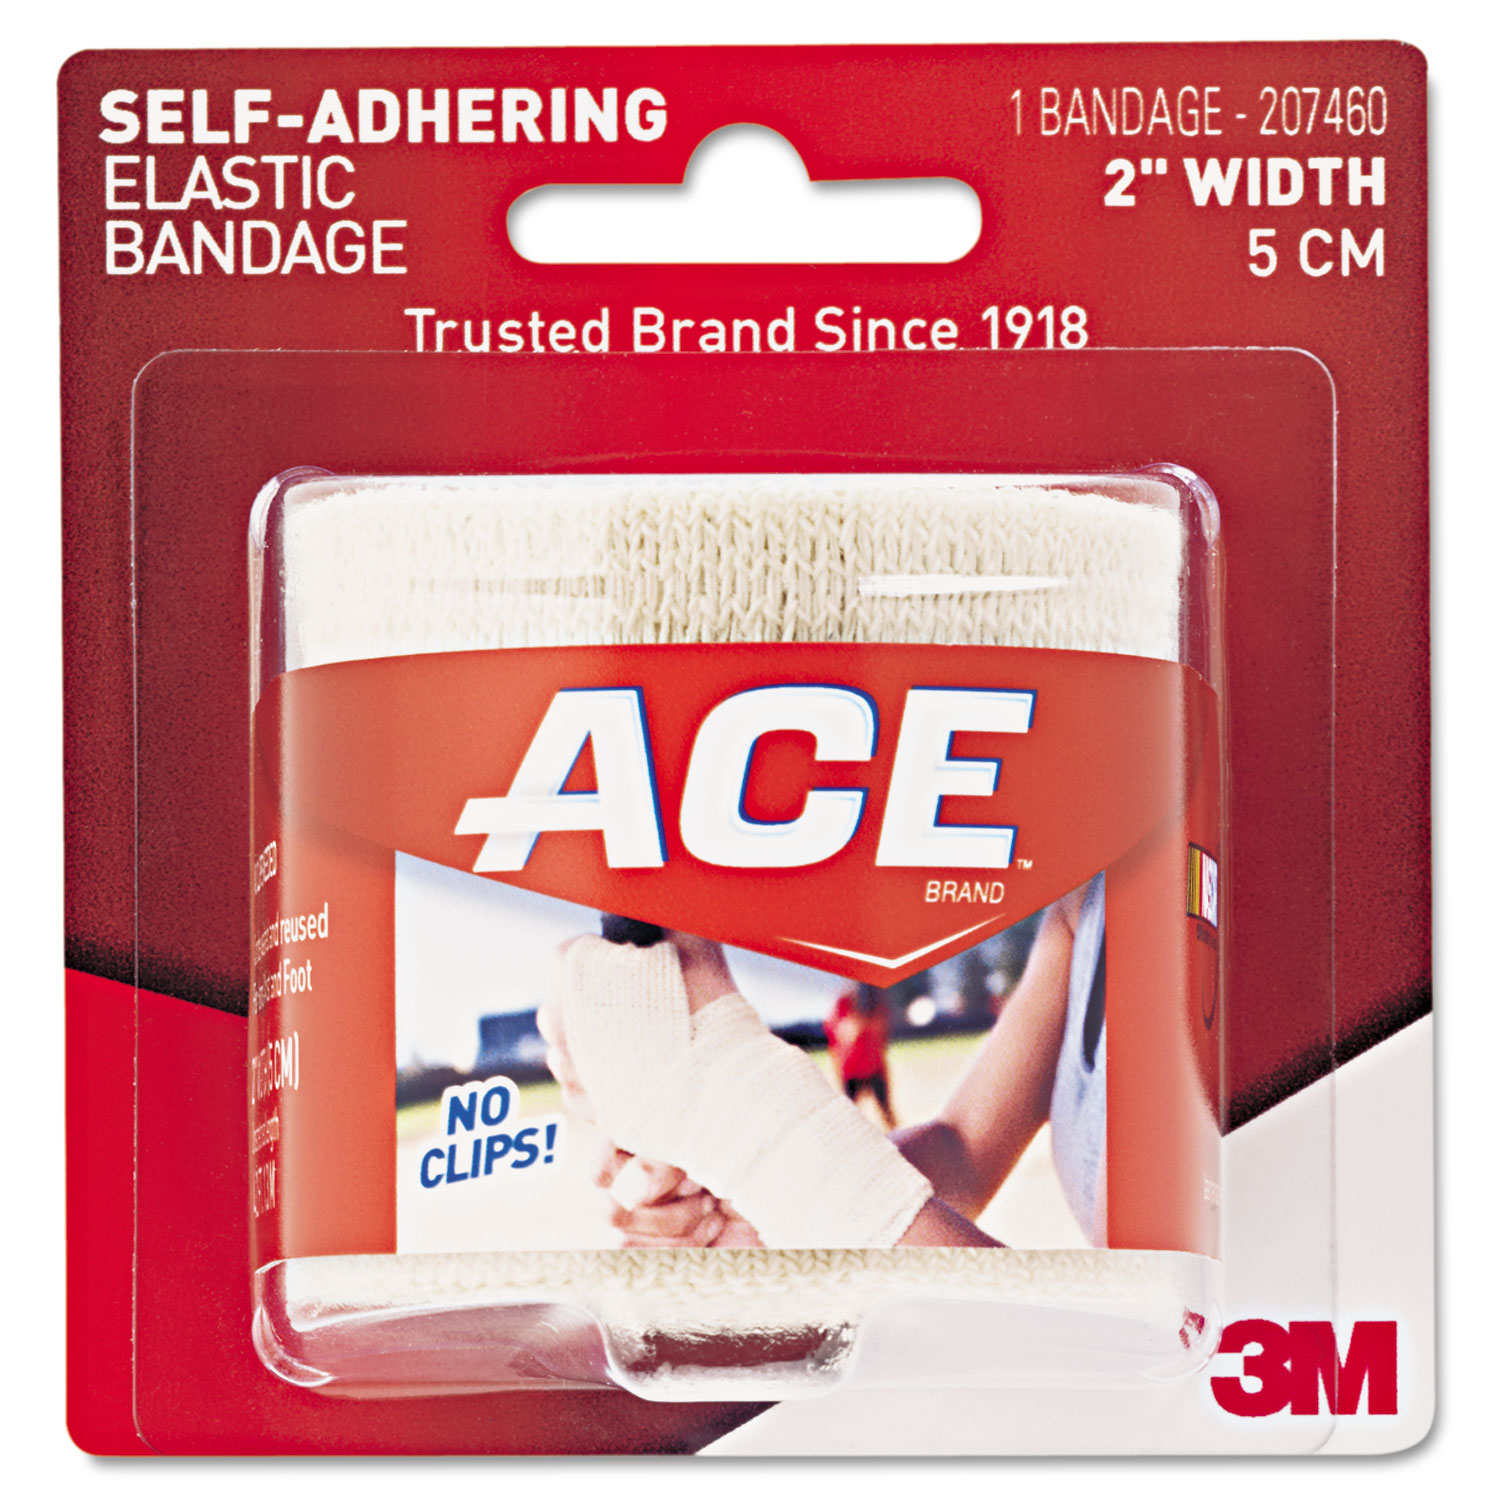 Ace Self-Adhesive Bandage, 2" x 50"